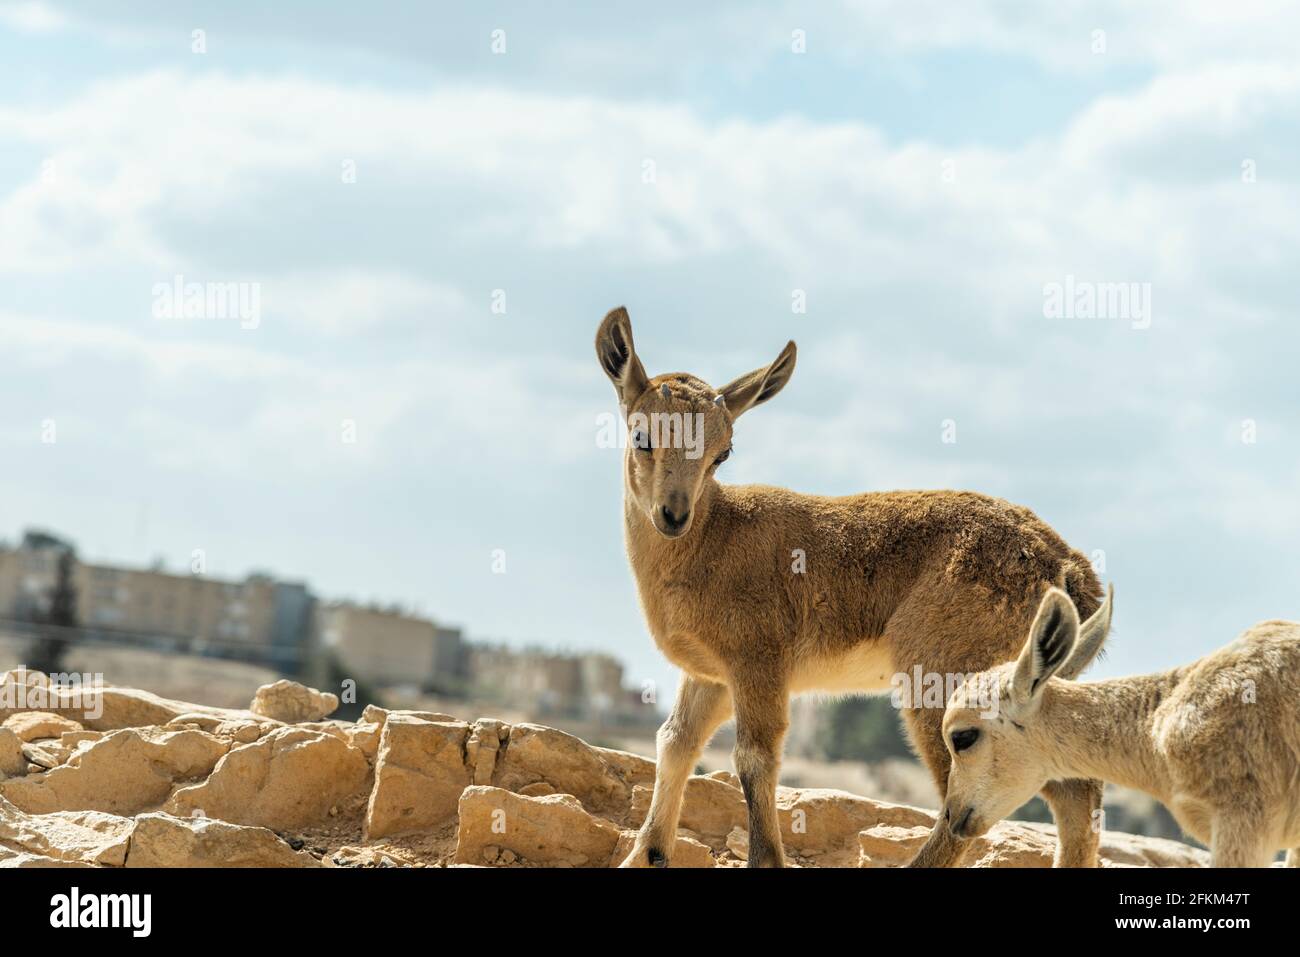 Capra ibex nubiana, famille des ibexes nubiens près de Mitzpe Ramon. Photo de haute qualité Banque D'Images